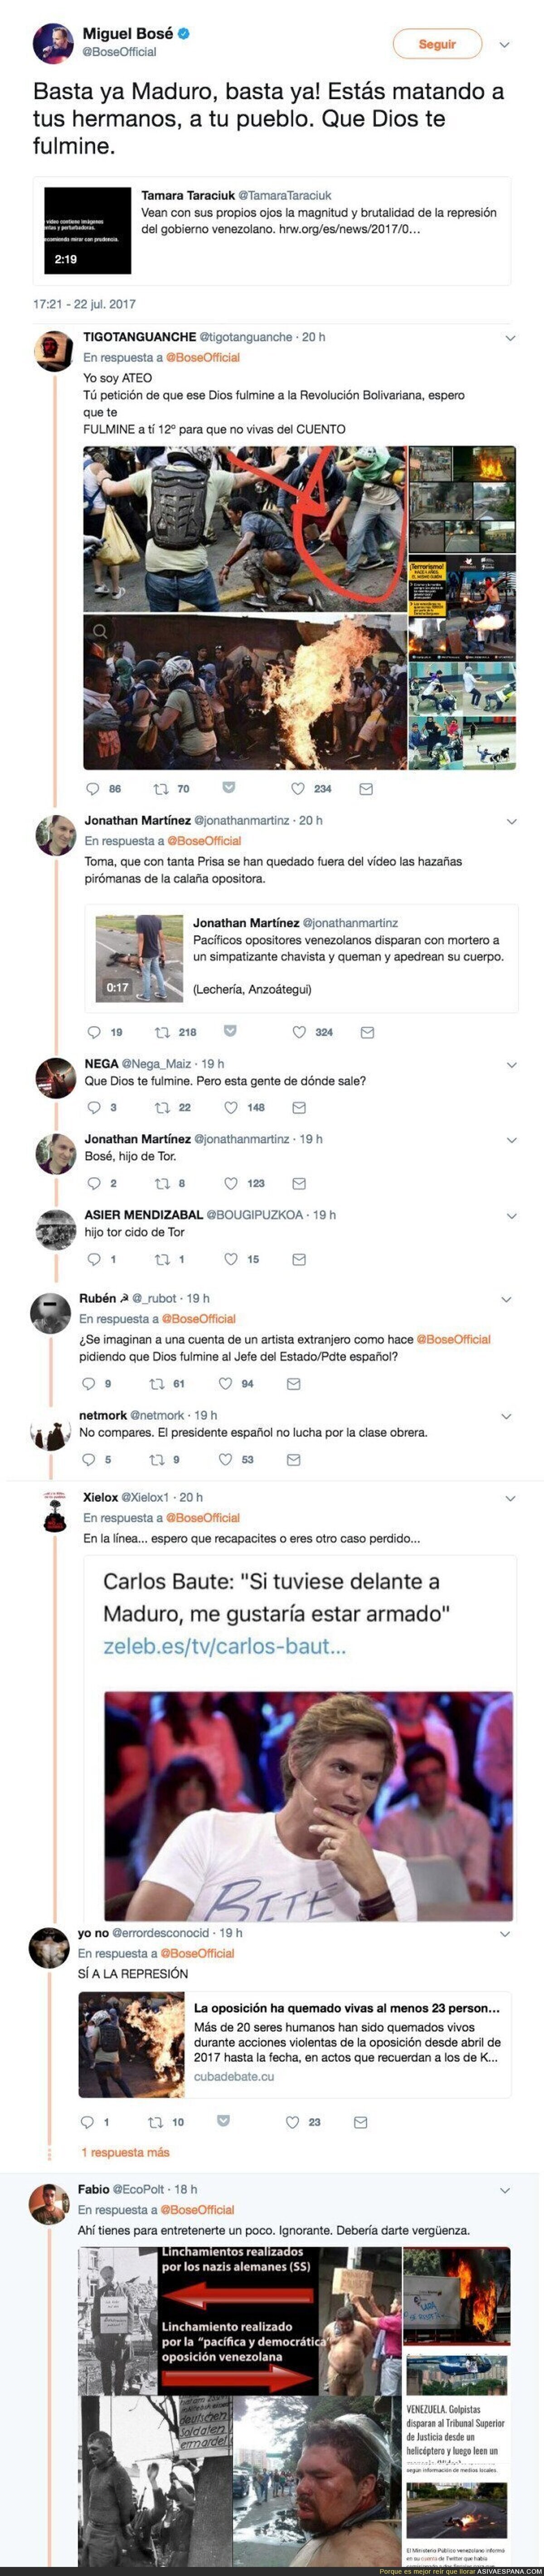 Miguel Bosé pide que Dios fulmine a Maduro y Twitter le recuerda las cosas que hace la oposición